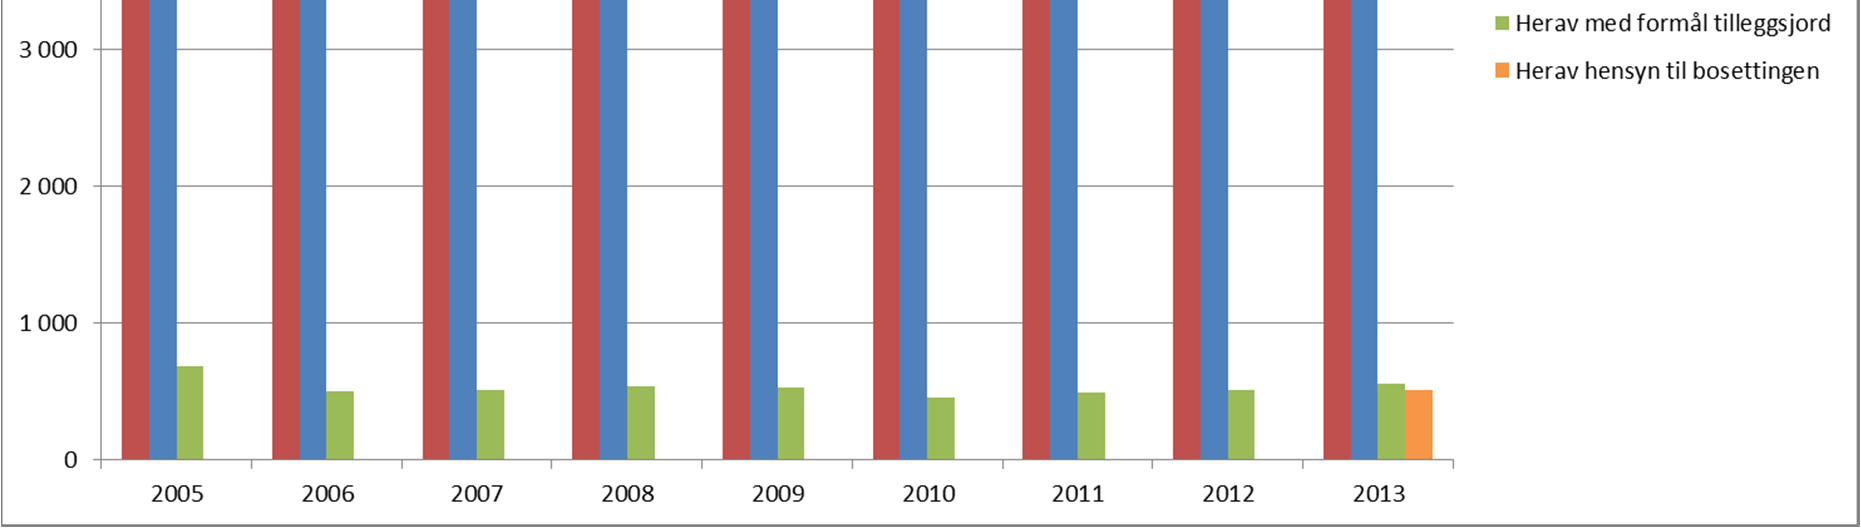 Avslagsprosenten har de senere år ligget på 8-10 %, men var i 2013 nede i 7 %. Totalt 381 kommuner behandlet delingssøknader i 2013.